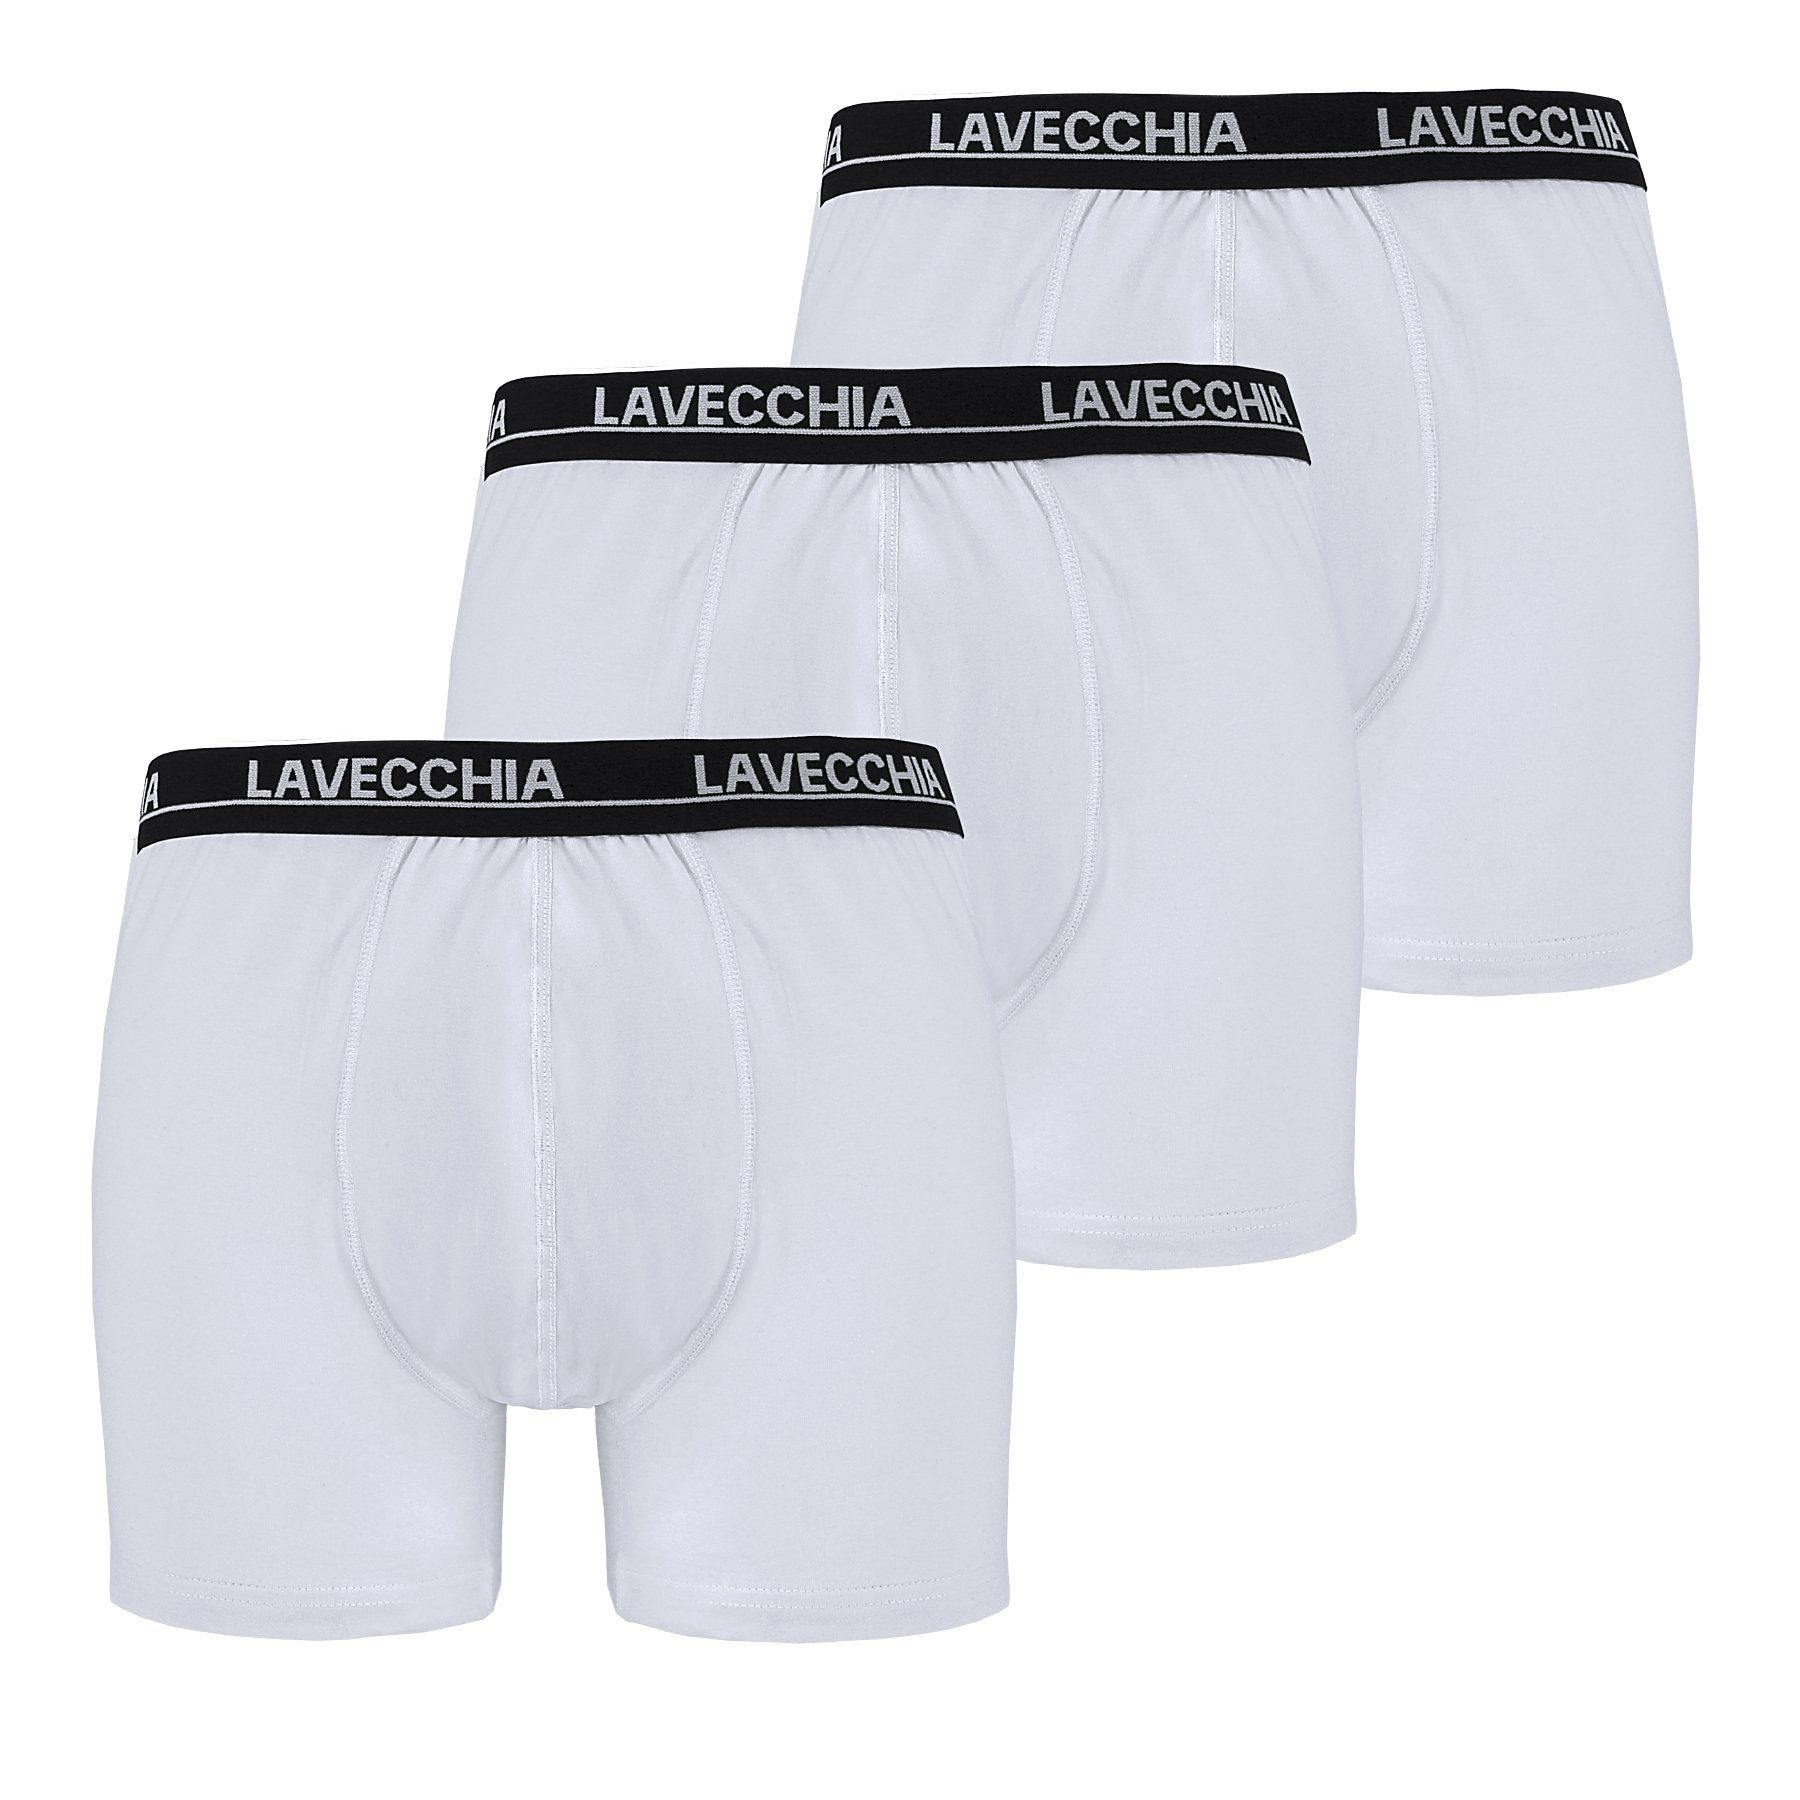 Lonsdale Herren Boxer Shorts Unterhose Unterwäsche 2 Paar Baumwollmischung 